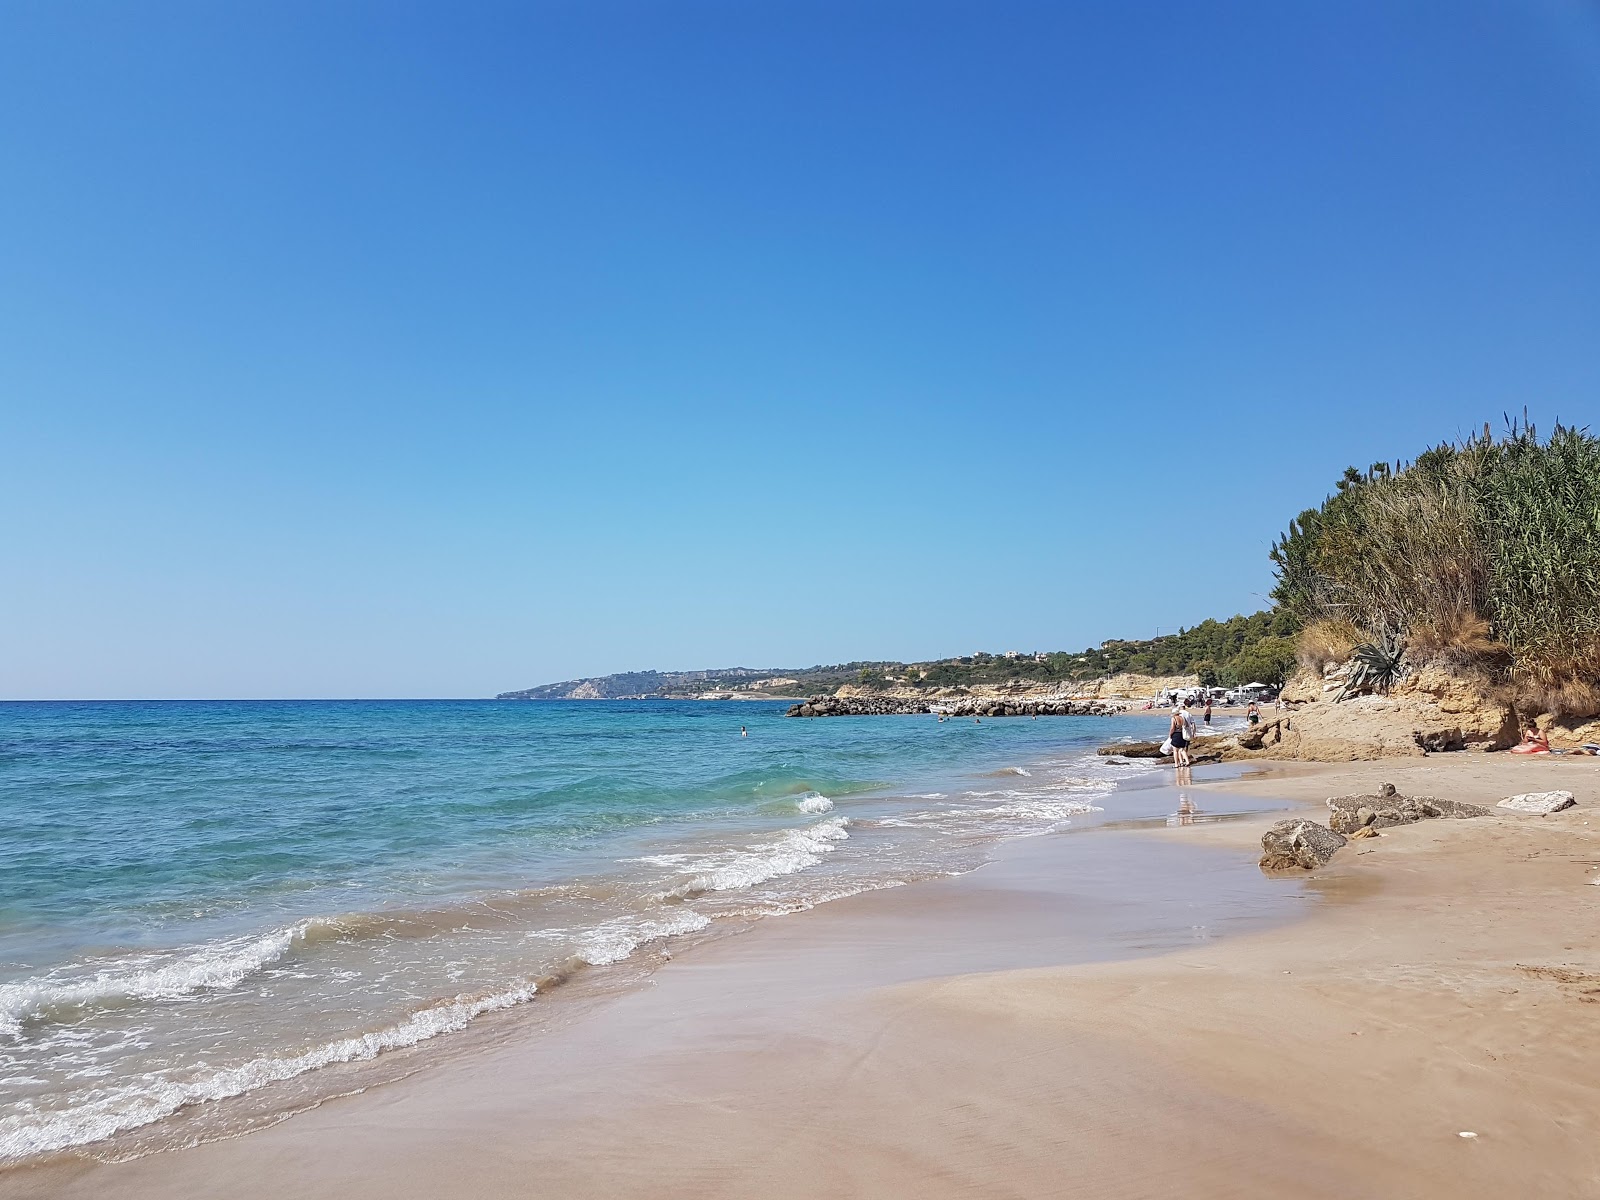 Foto von Kanali beach - beliebter Ort unter Entspannungskennern